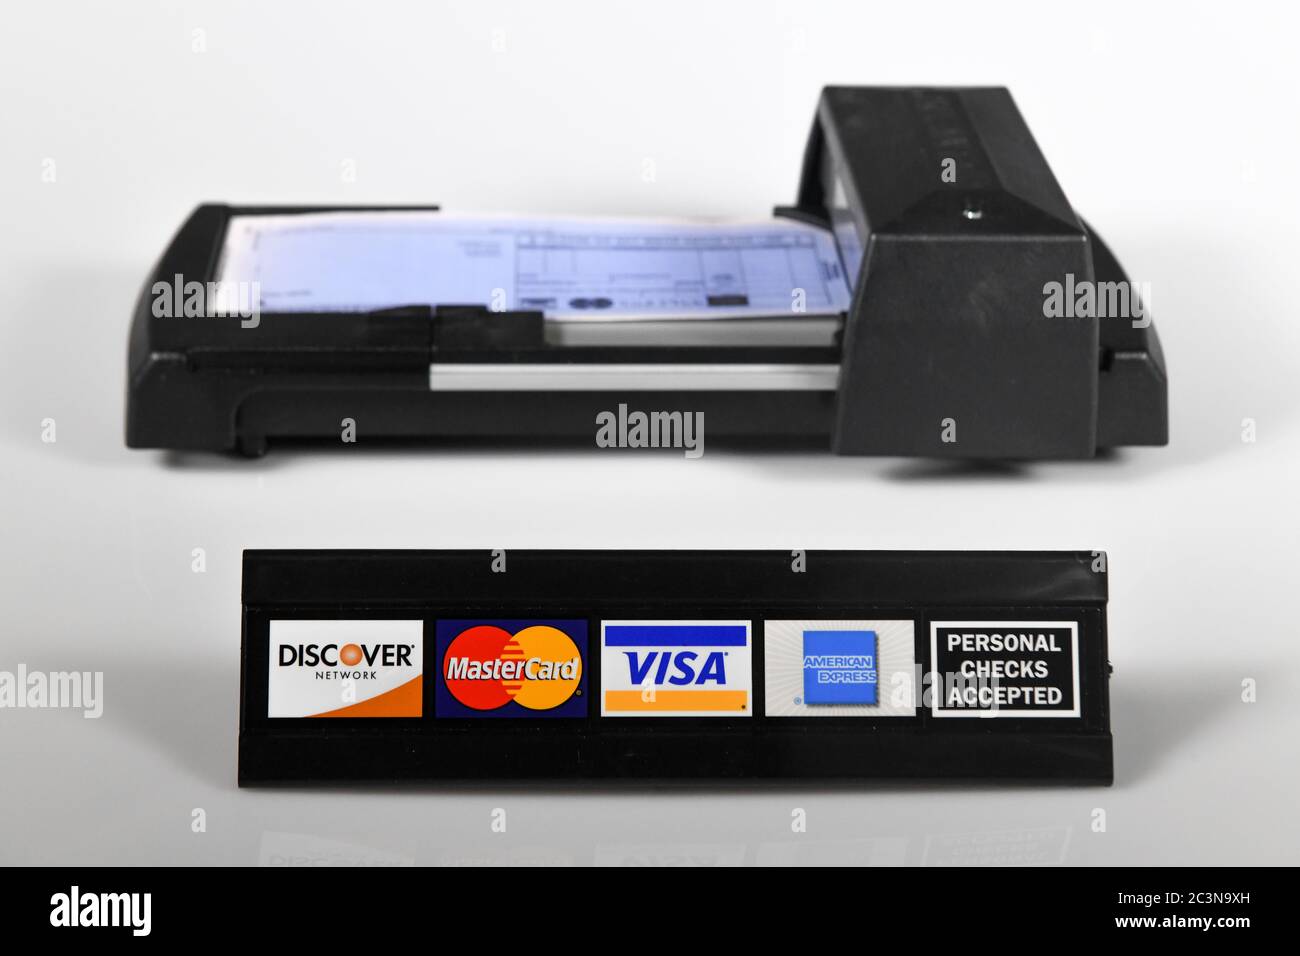 Manuelle Kreditkartenmaschine - alte Technik - ein manuell bedienter Kreditkartendrucker mit Kreditkartenlogos - persönliches Scheckschild Stockfoto